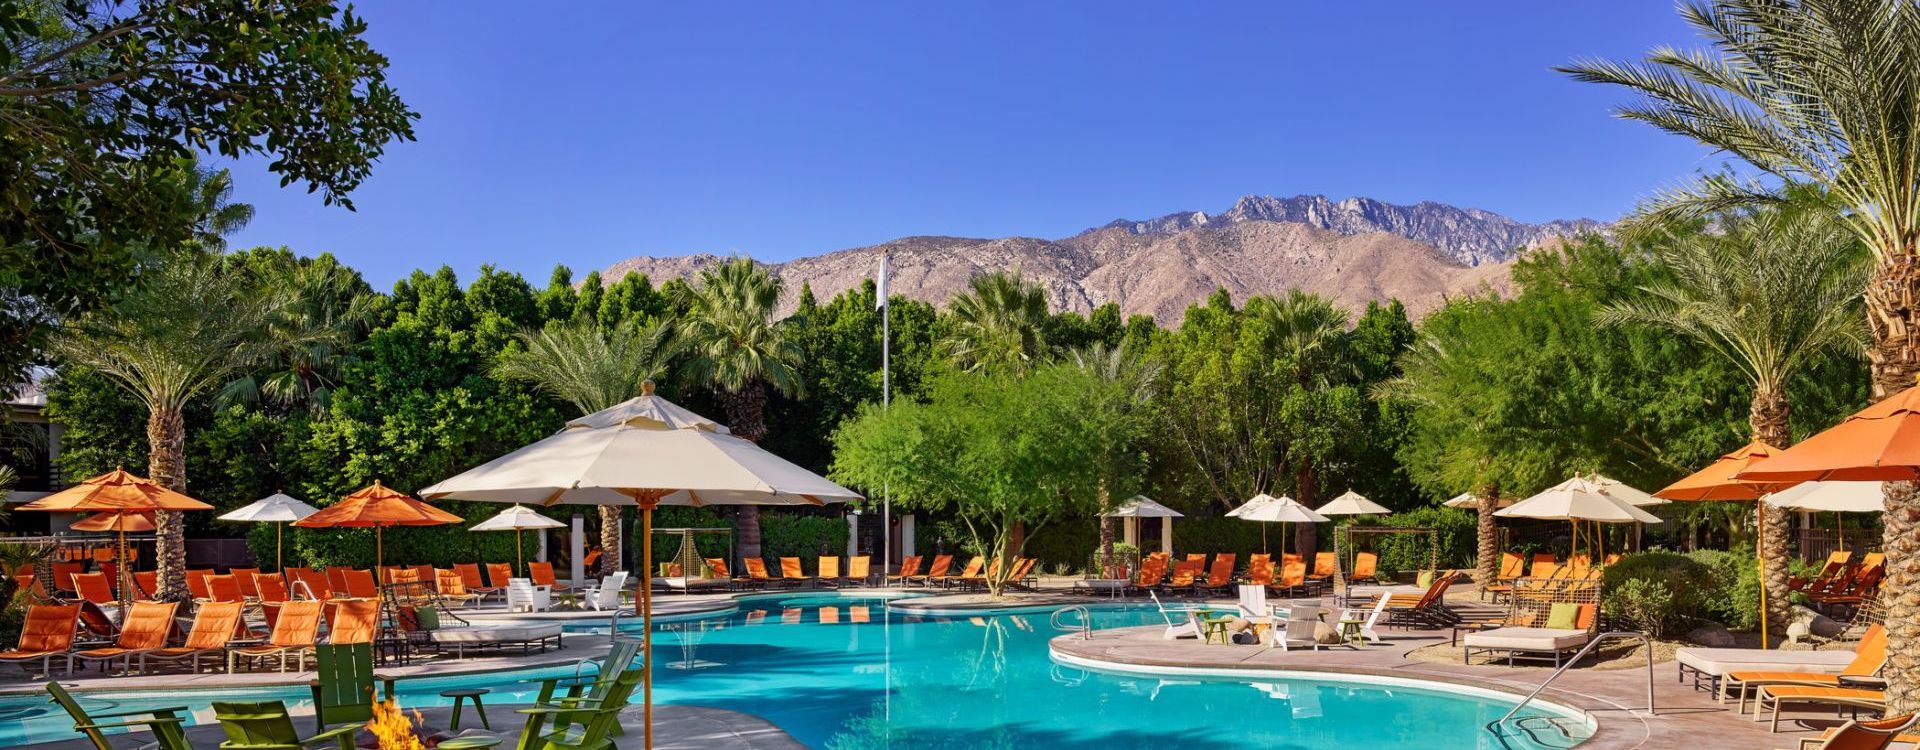  Margaritaville Resort Palm Springs6.jpeg